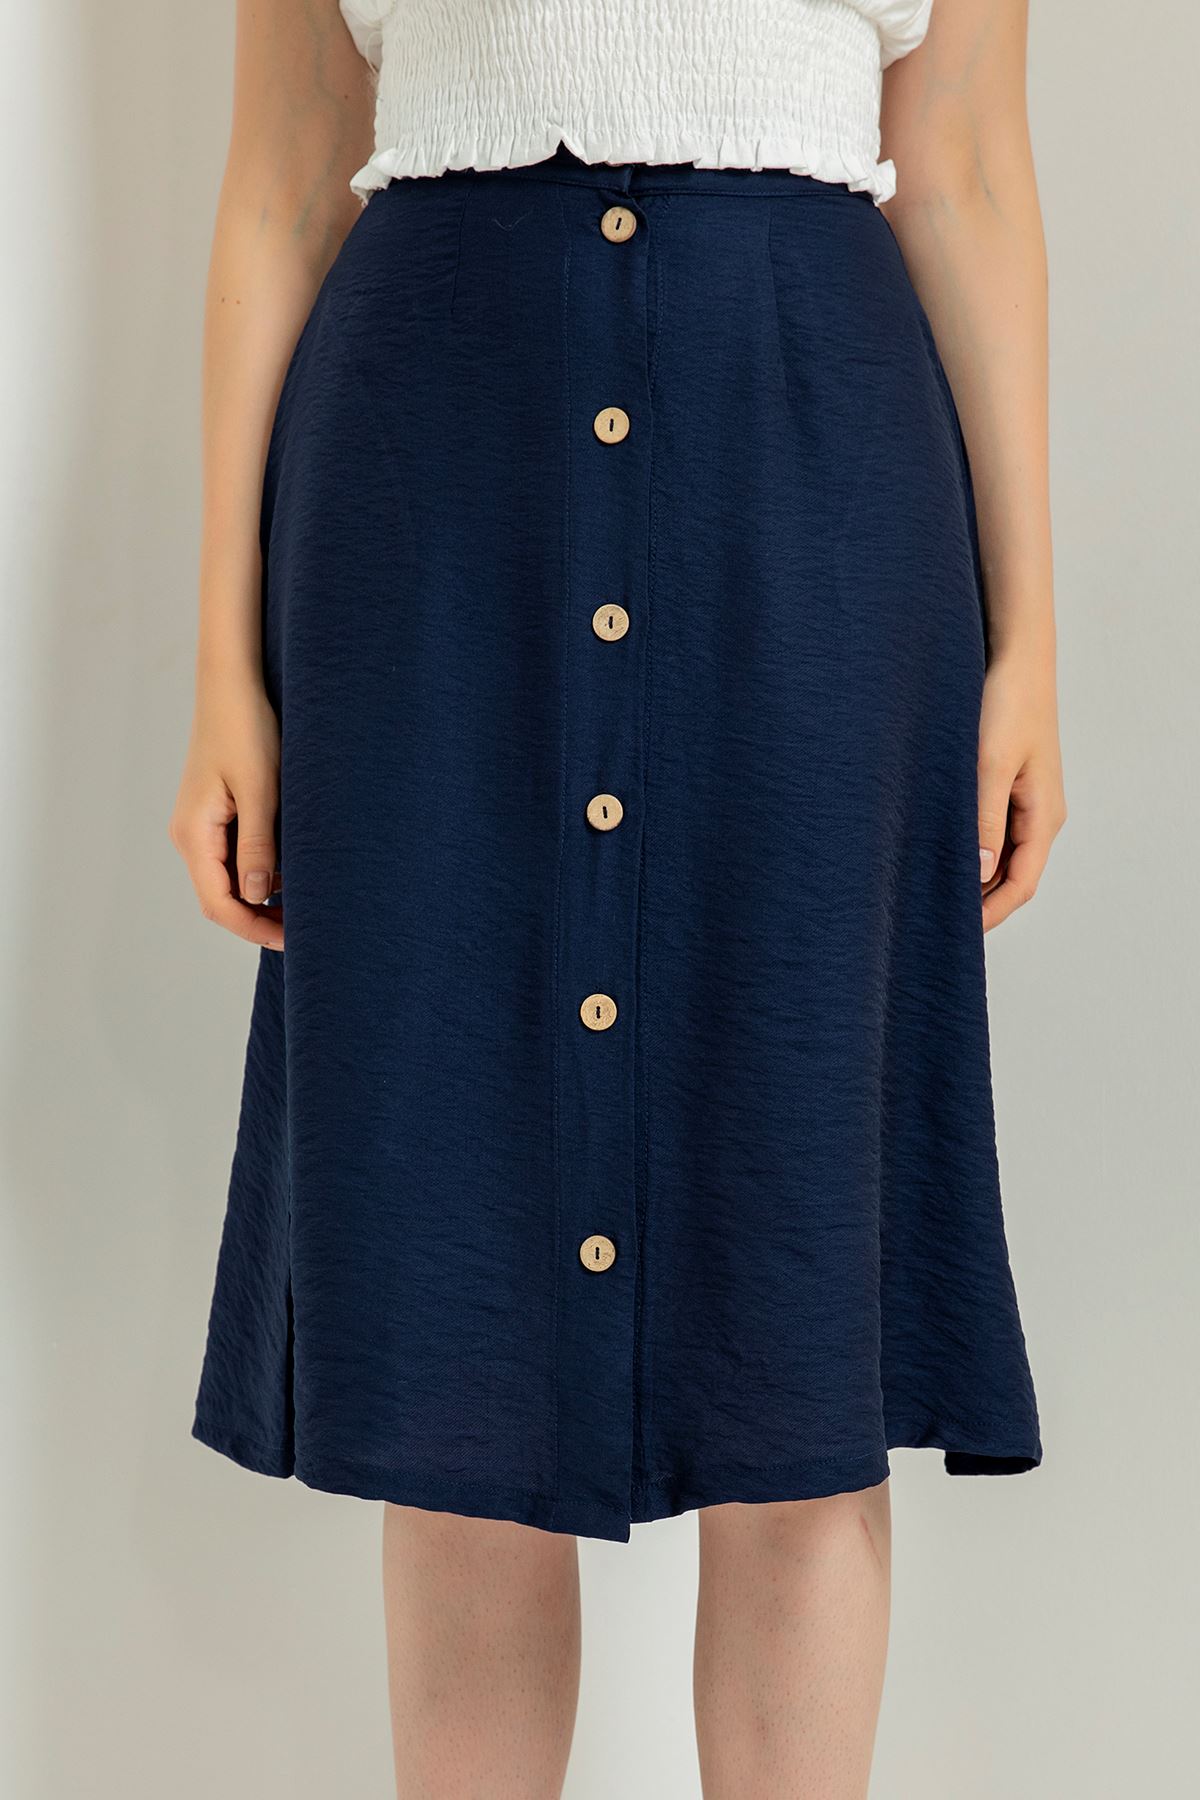 Aerobin Fabric Below Knee Straight Button Women'S Skirt - Navy Blue 